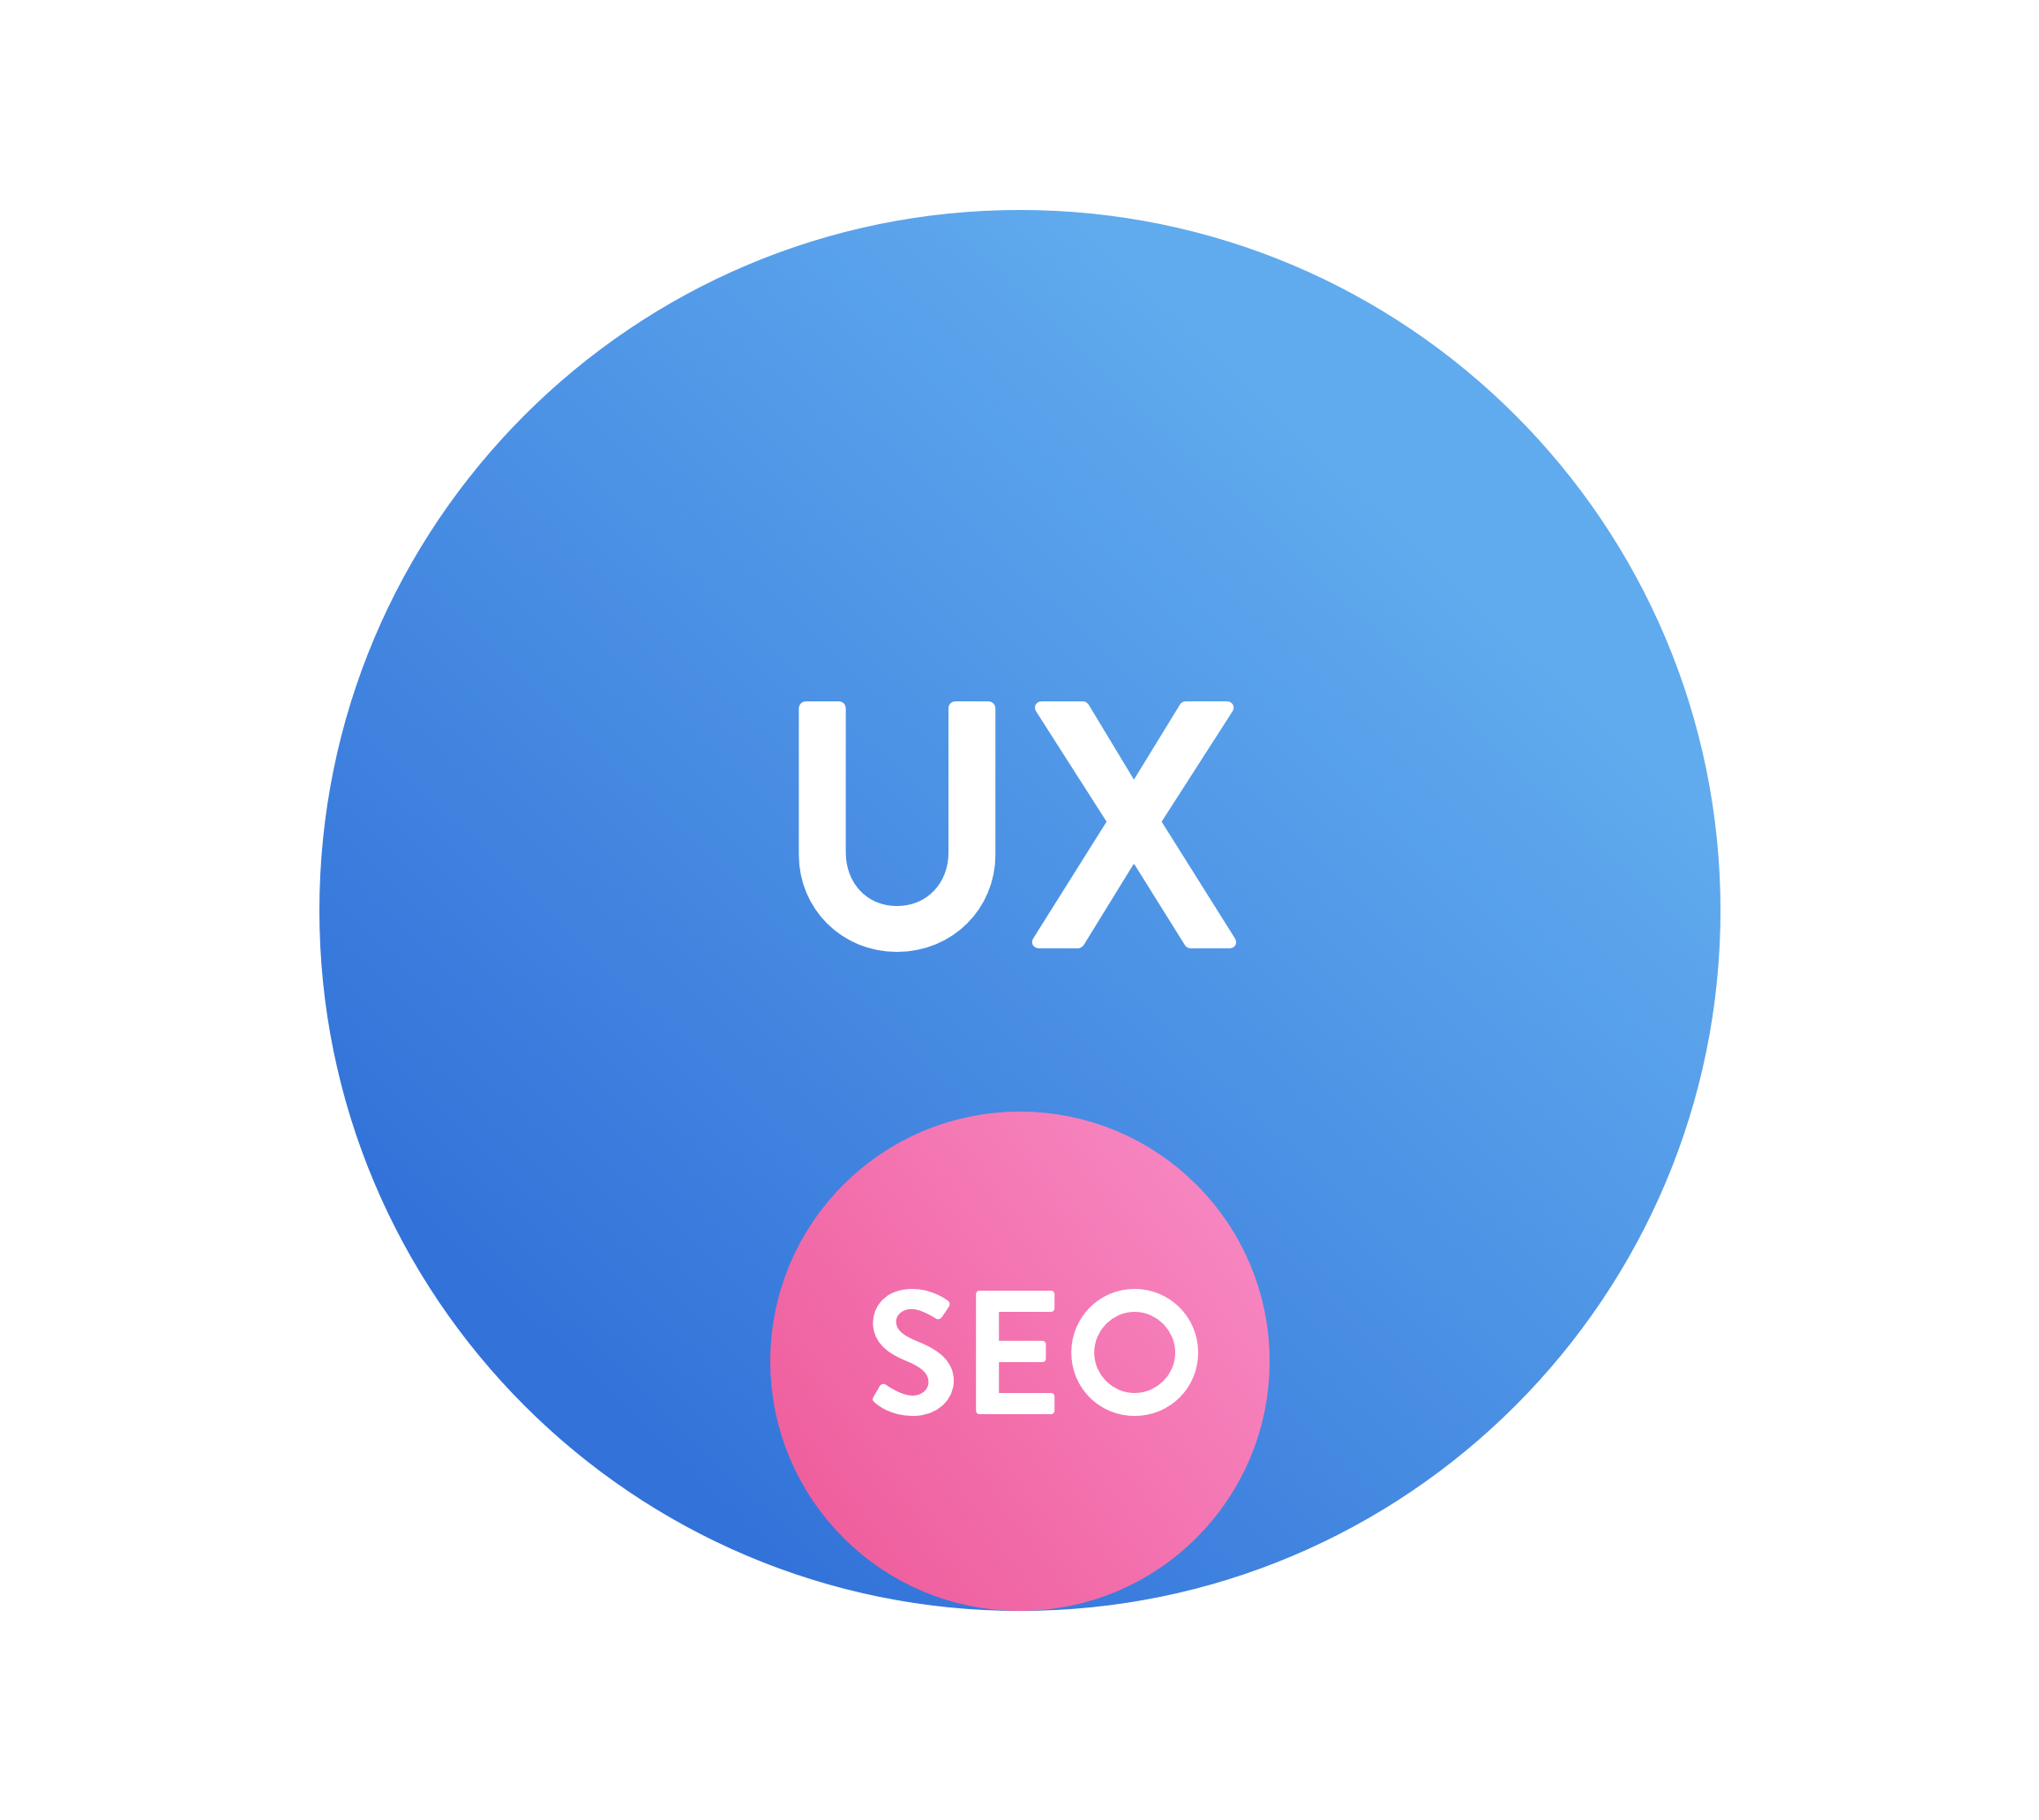 SEO für UX – SEO ist ein Teil der Aufgaben von UX